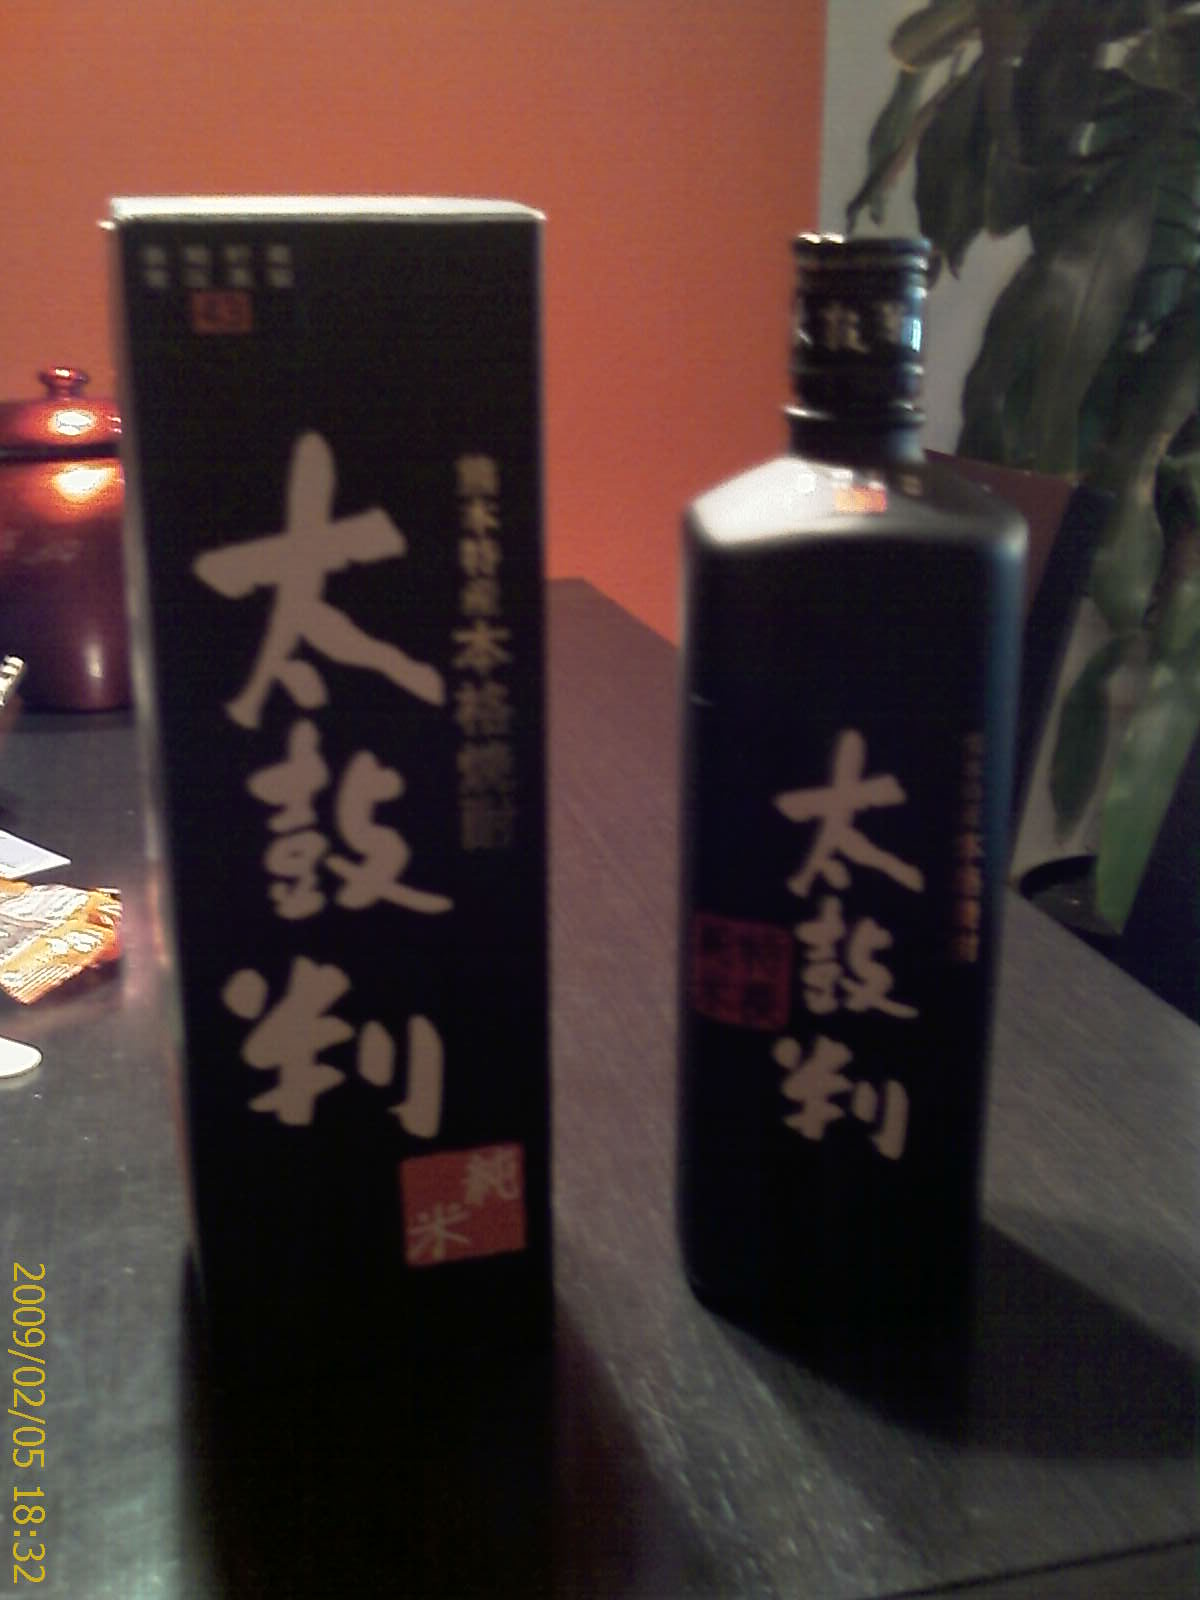 Botella de Sake que compramos en nuestro viaje a Japón